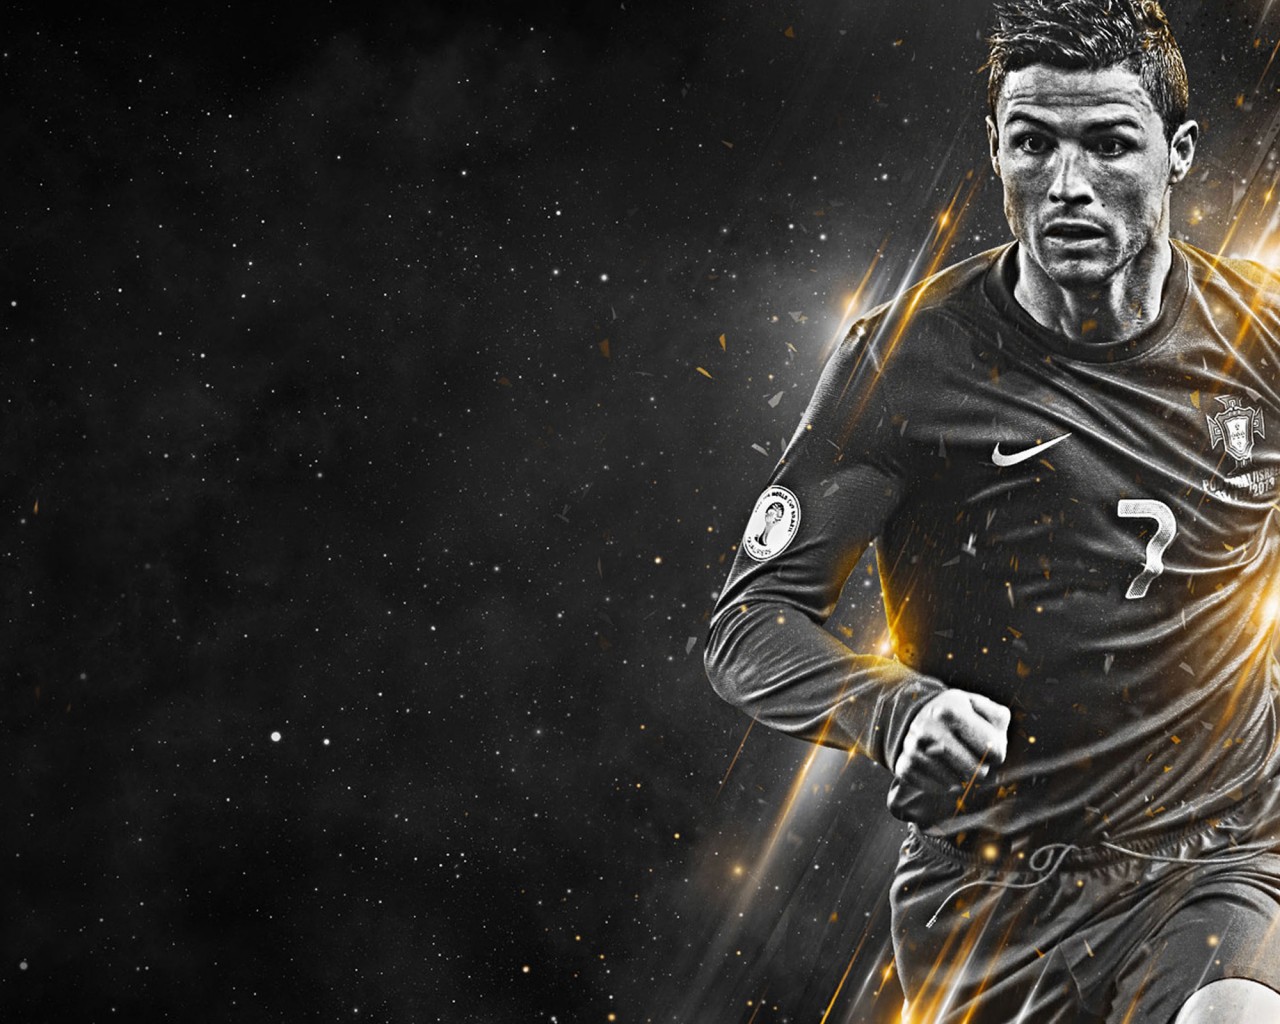 Cristiano Ronaldo black and white wallpaper - Cristiano Ronaldo Wallpapers